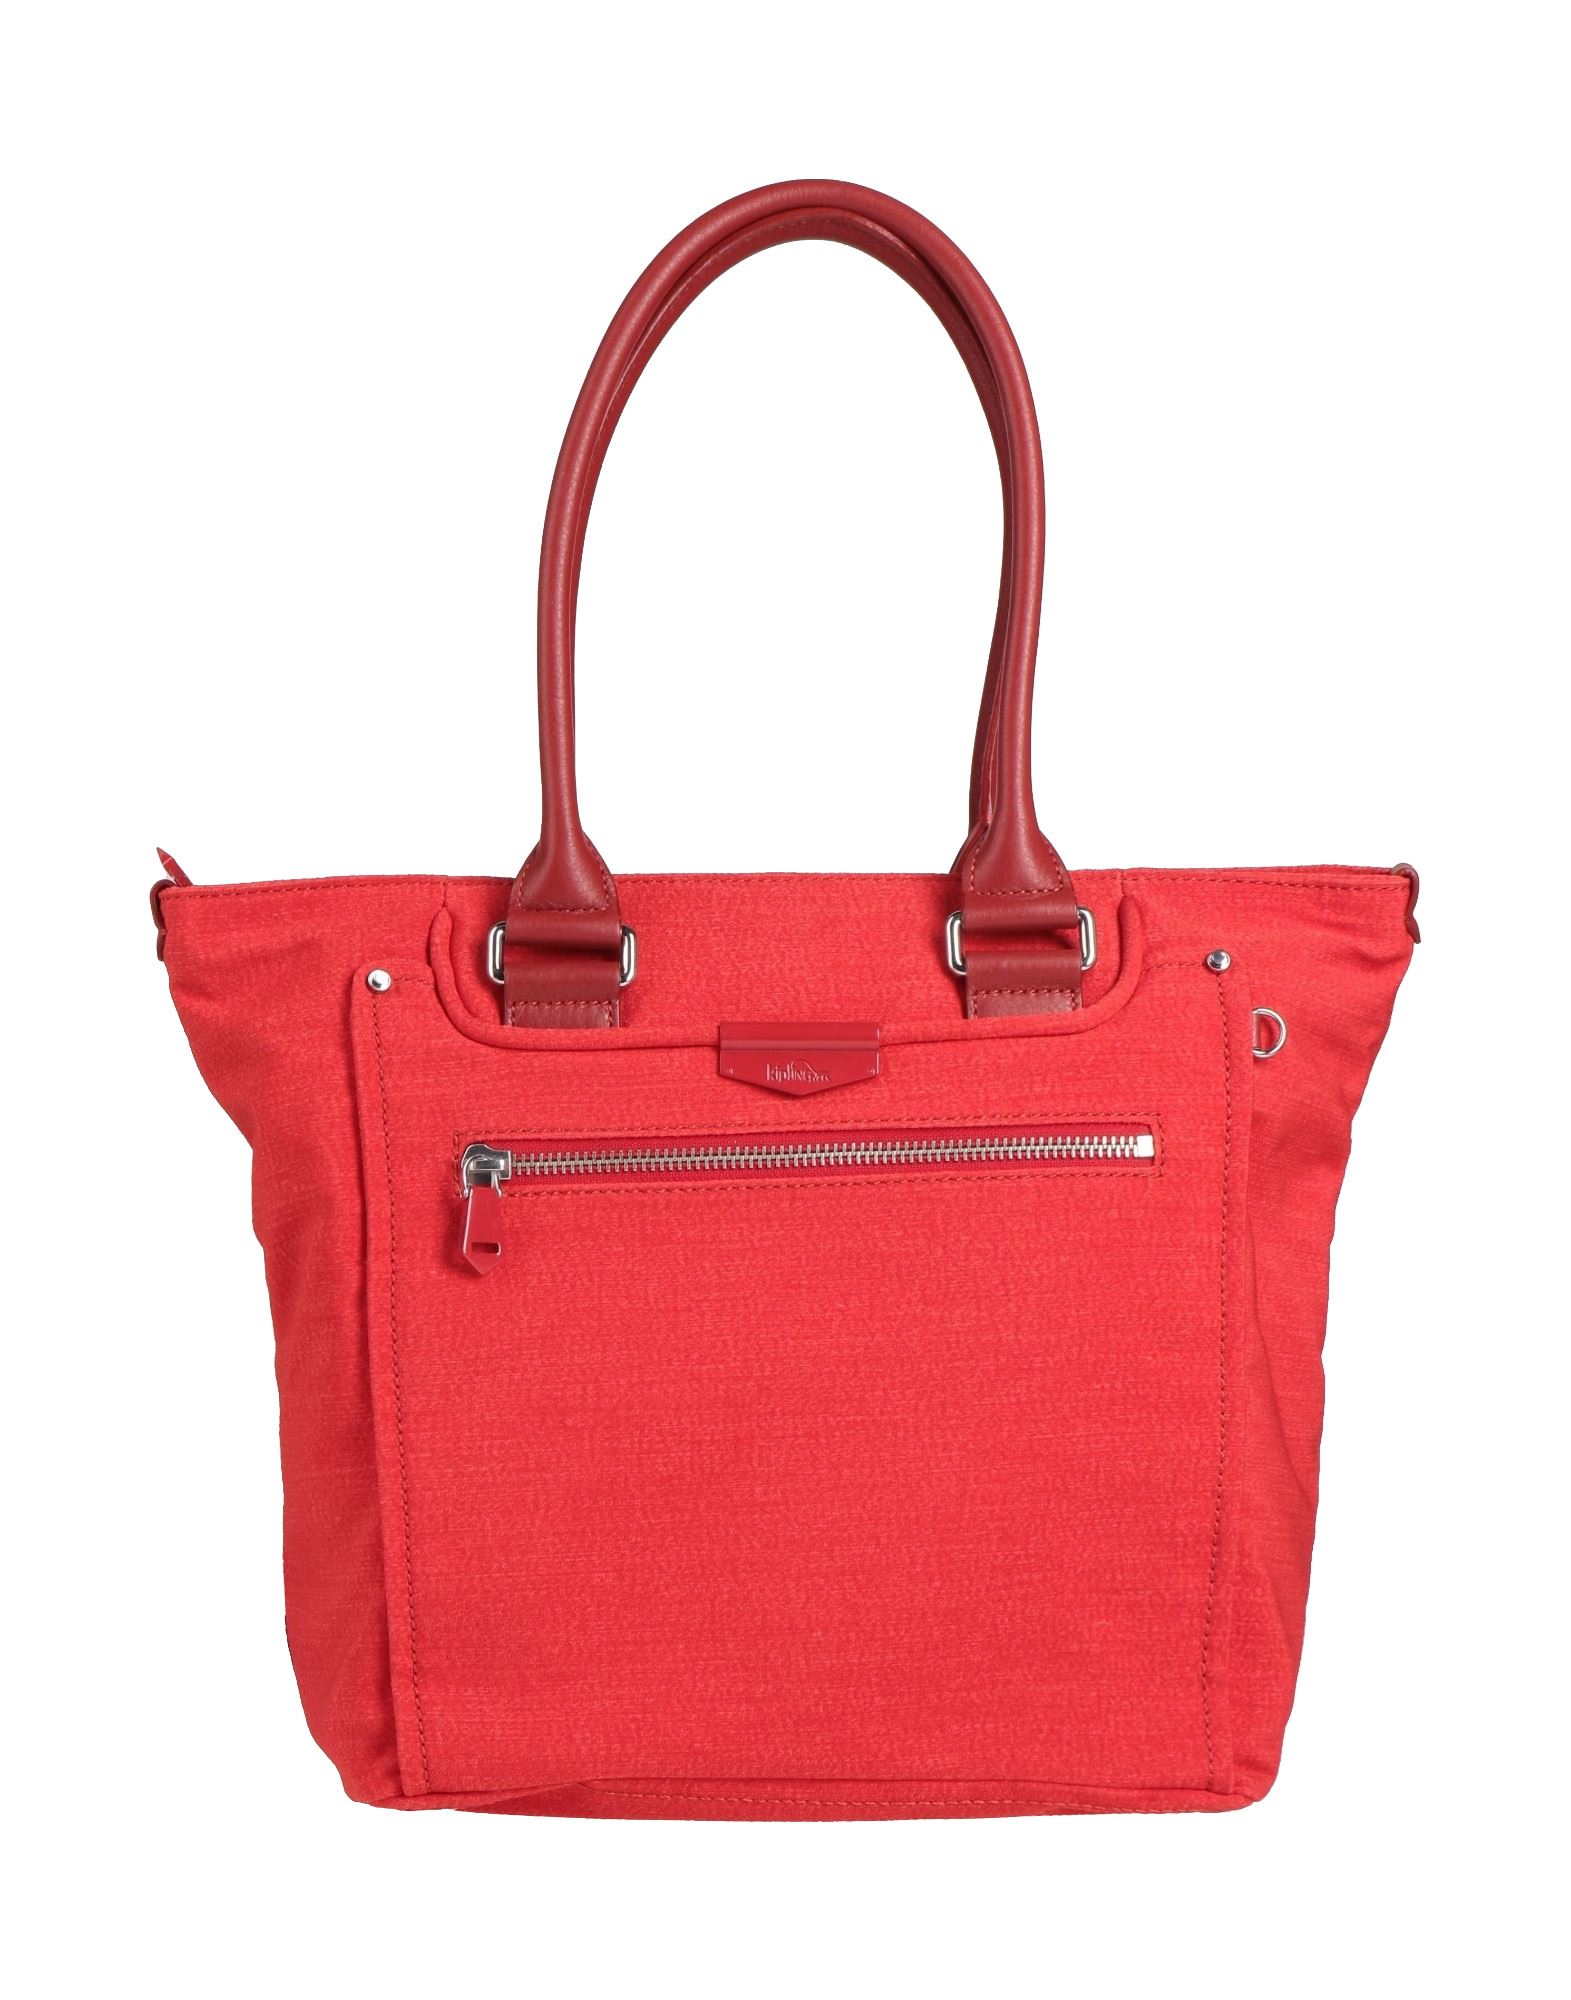 Kipling Handbags In Red